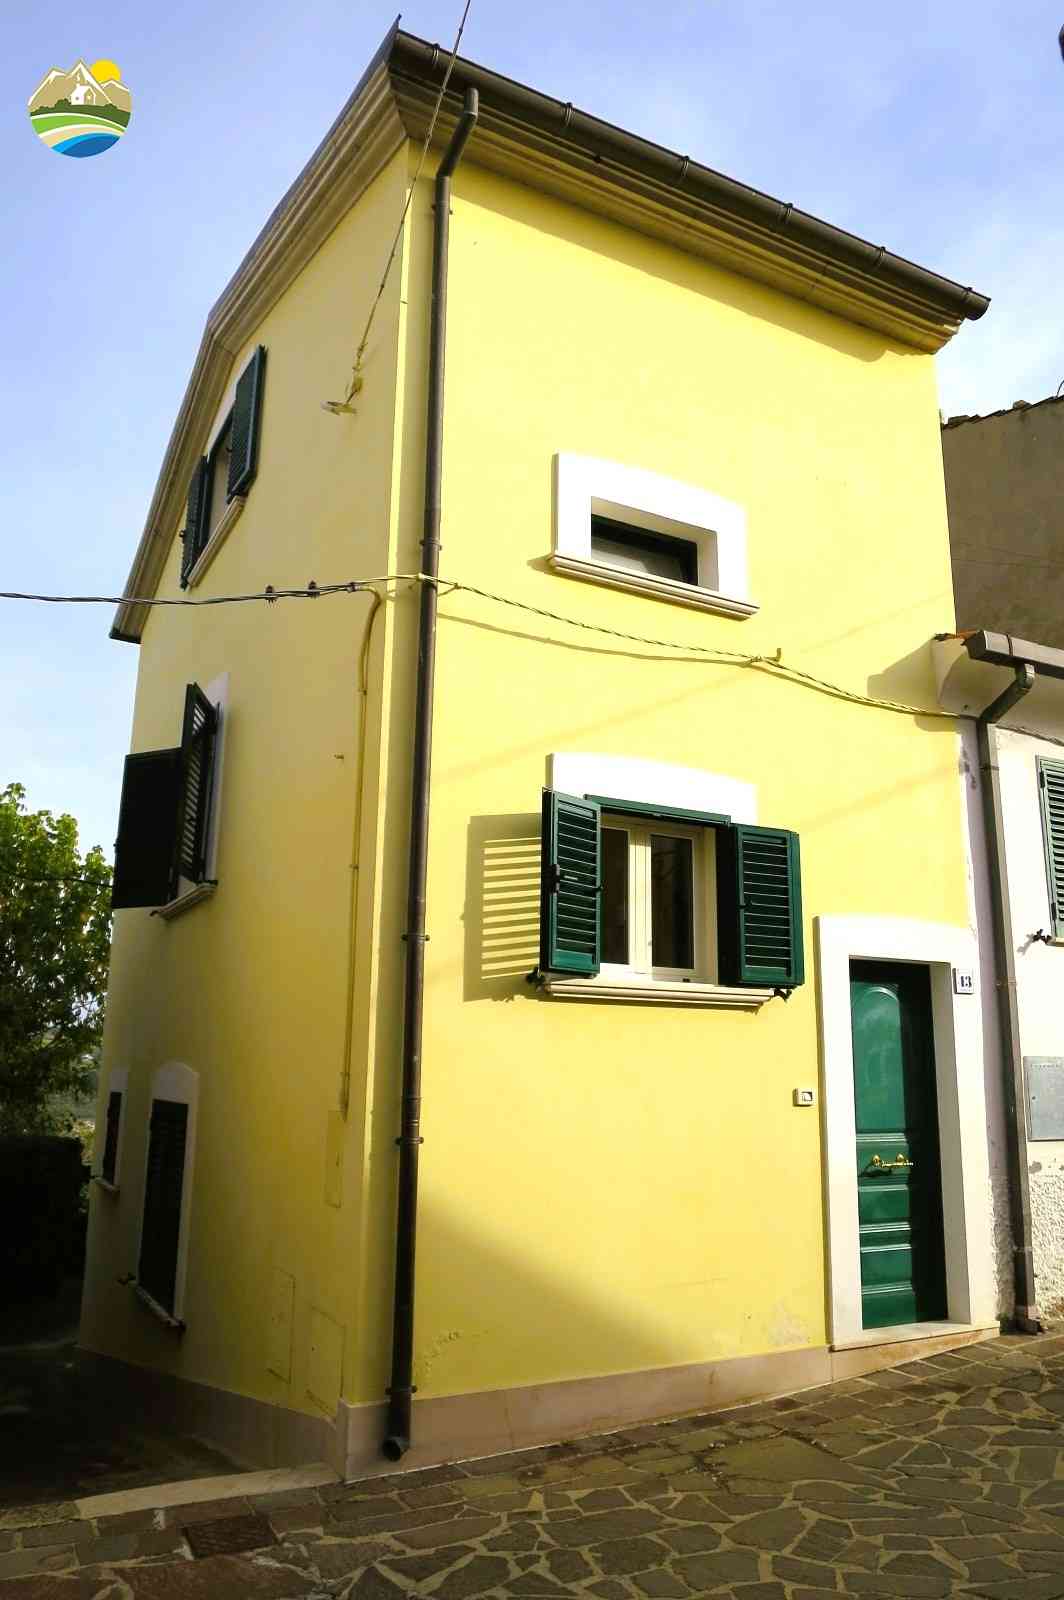 Casa in paese Casa in paese in vendita Picciano (PE), Casa Bomboniera - Picciano - EUR 48.860 650